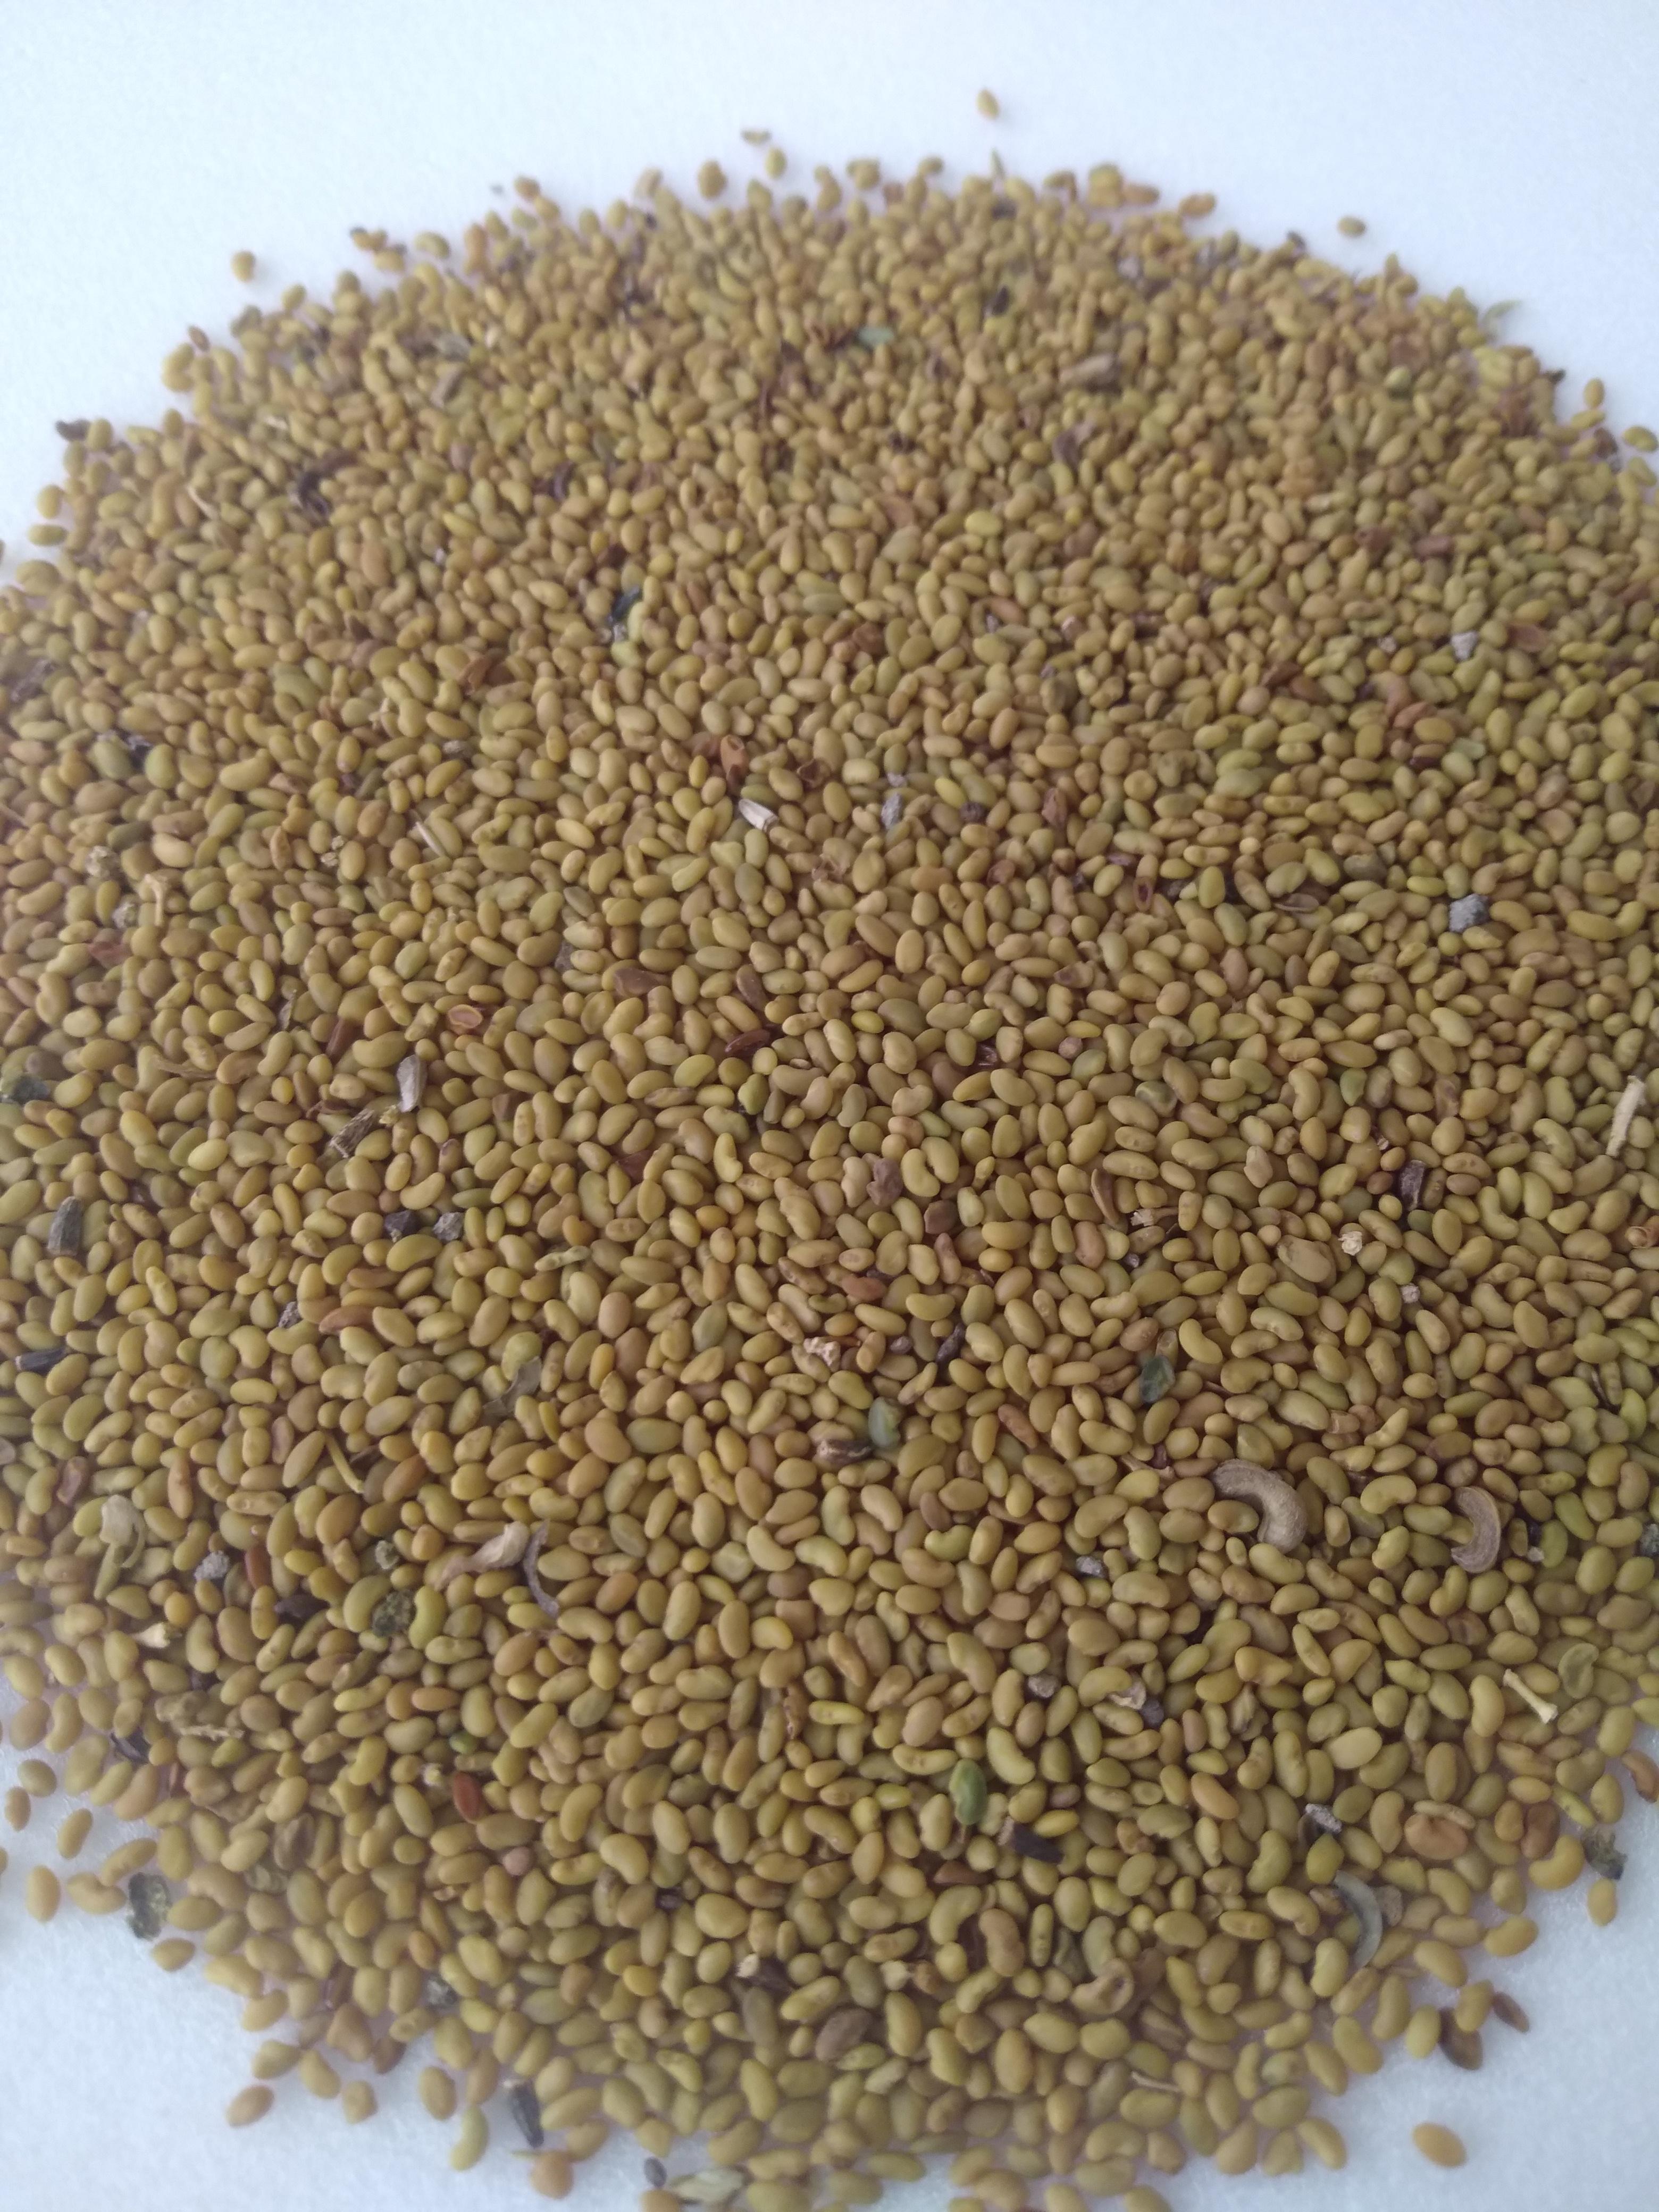 Yonca tohumu - Muharrem Demiray tarafından verilen satılık yonca tohumu ilanını ve diğer satılık yonca tohumu ilanlarını tarimziraat.com adresinde bulabilirsiniz